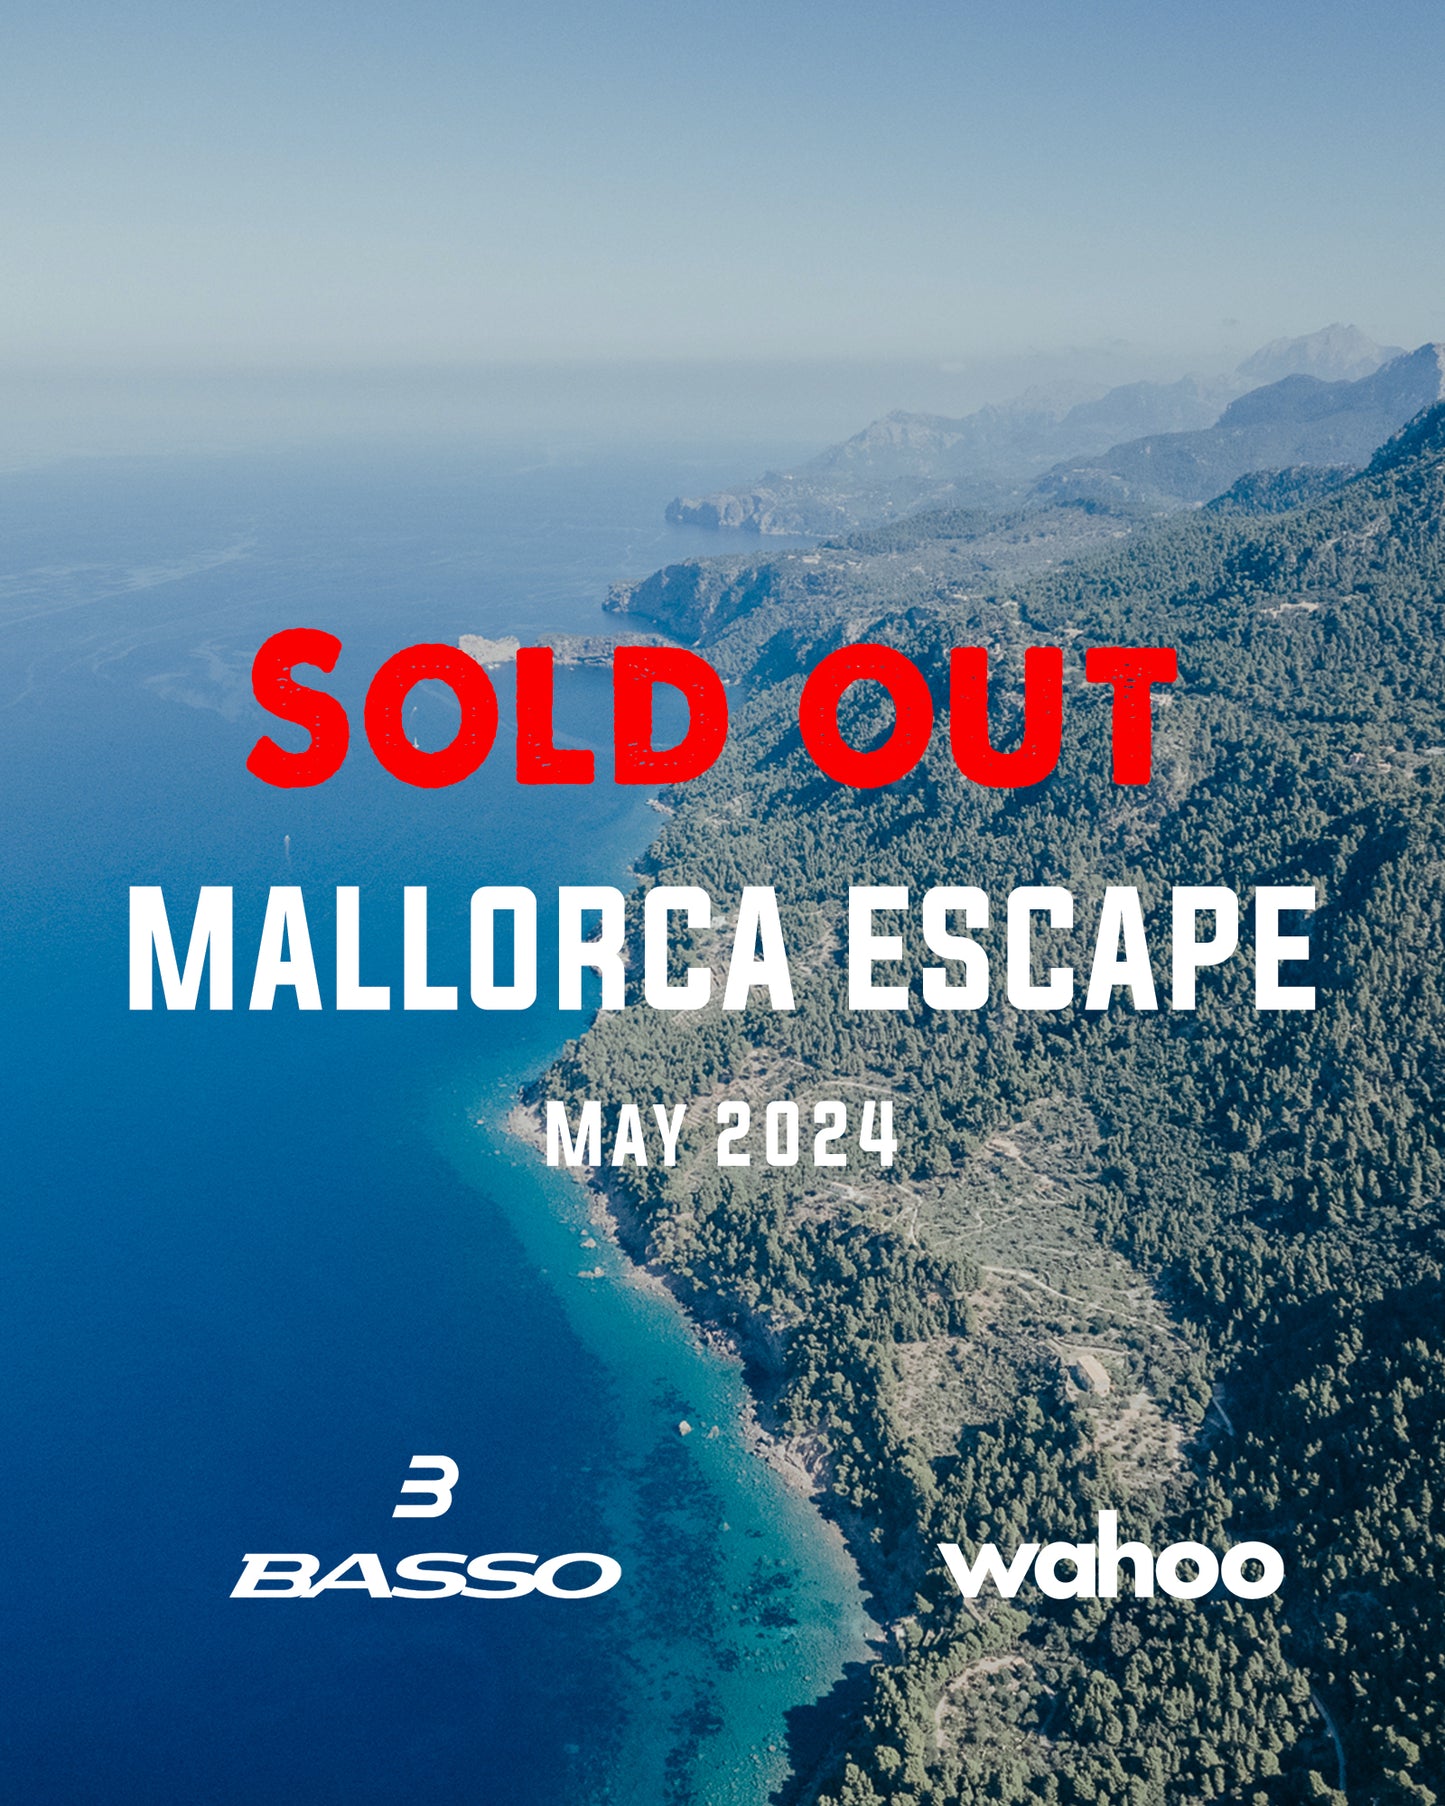 The Mallorca Escape - May 2024